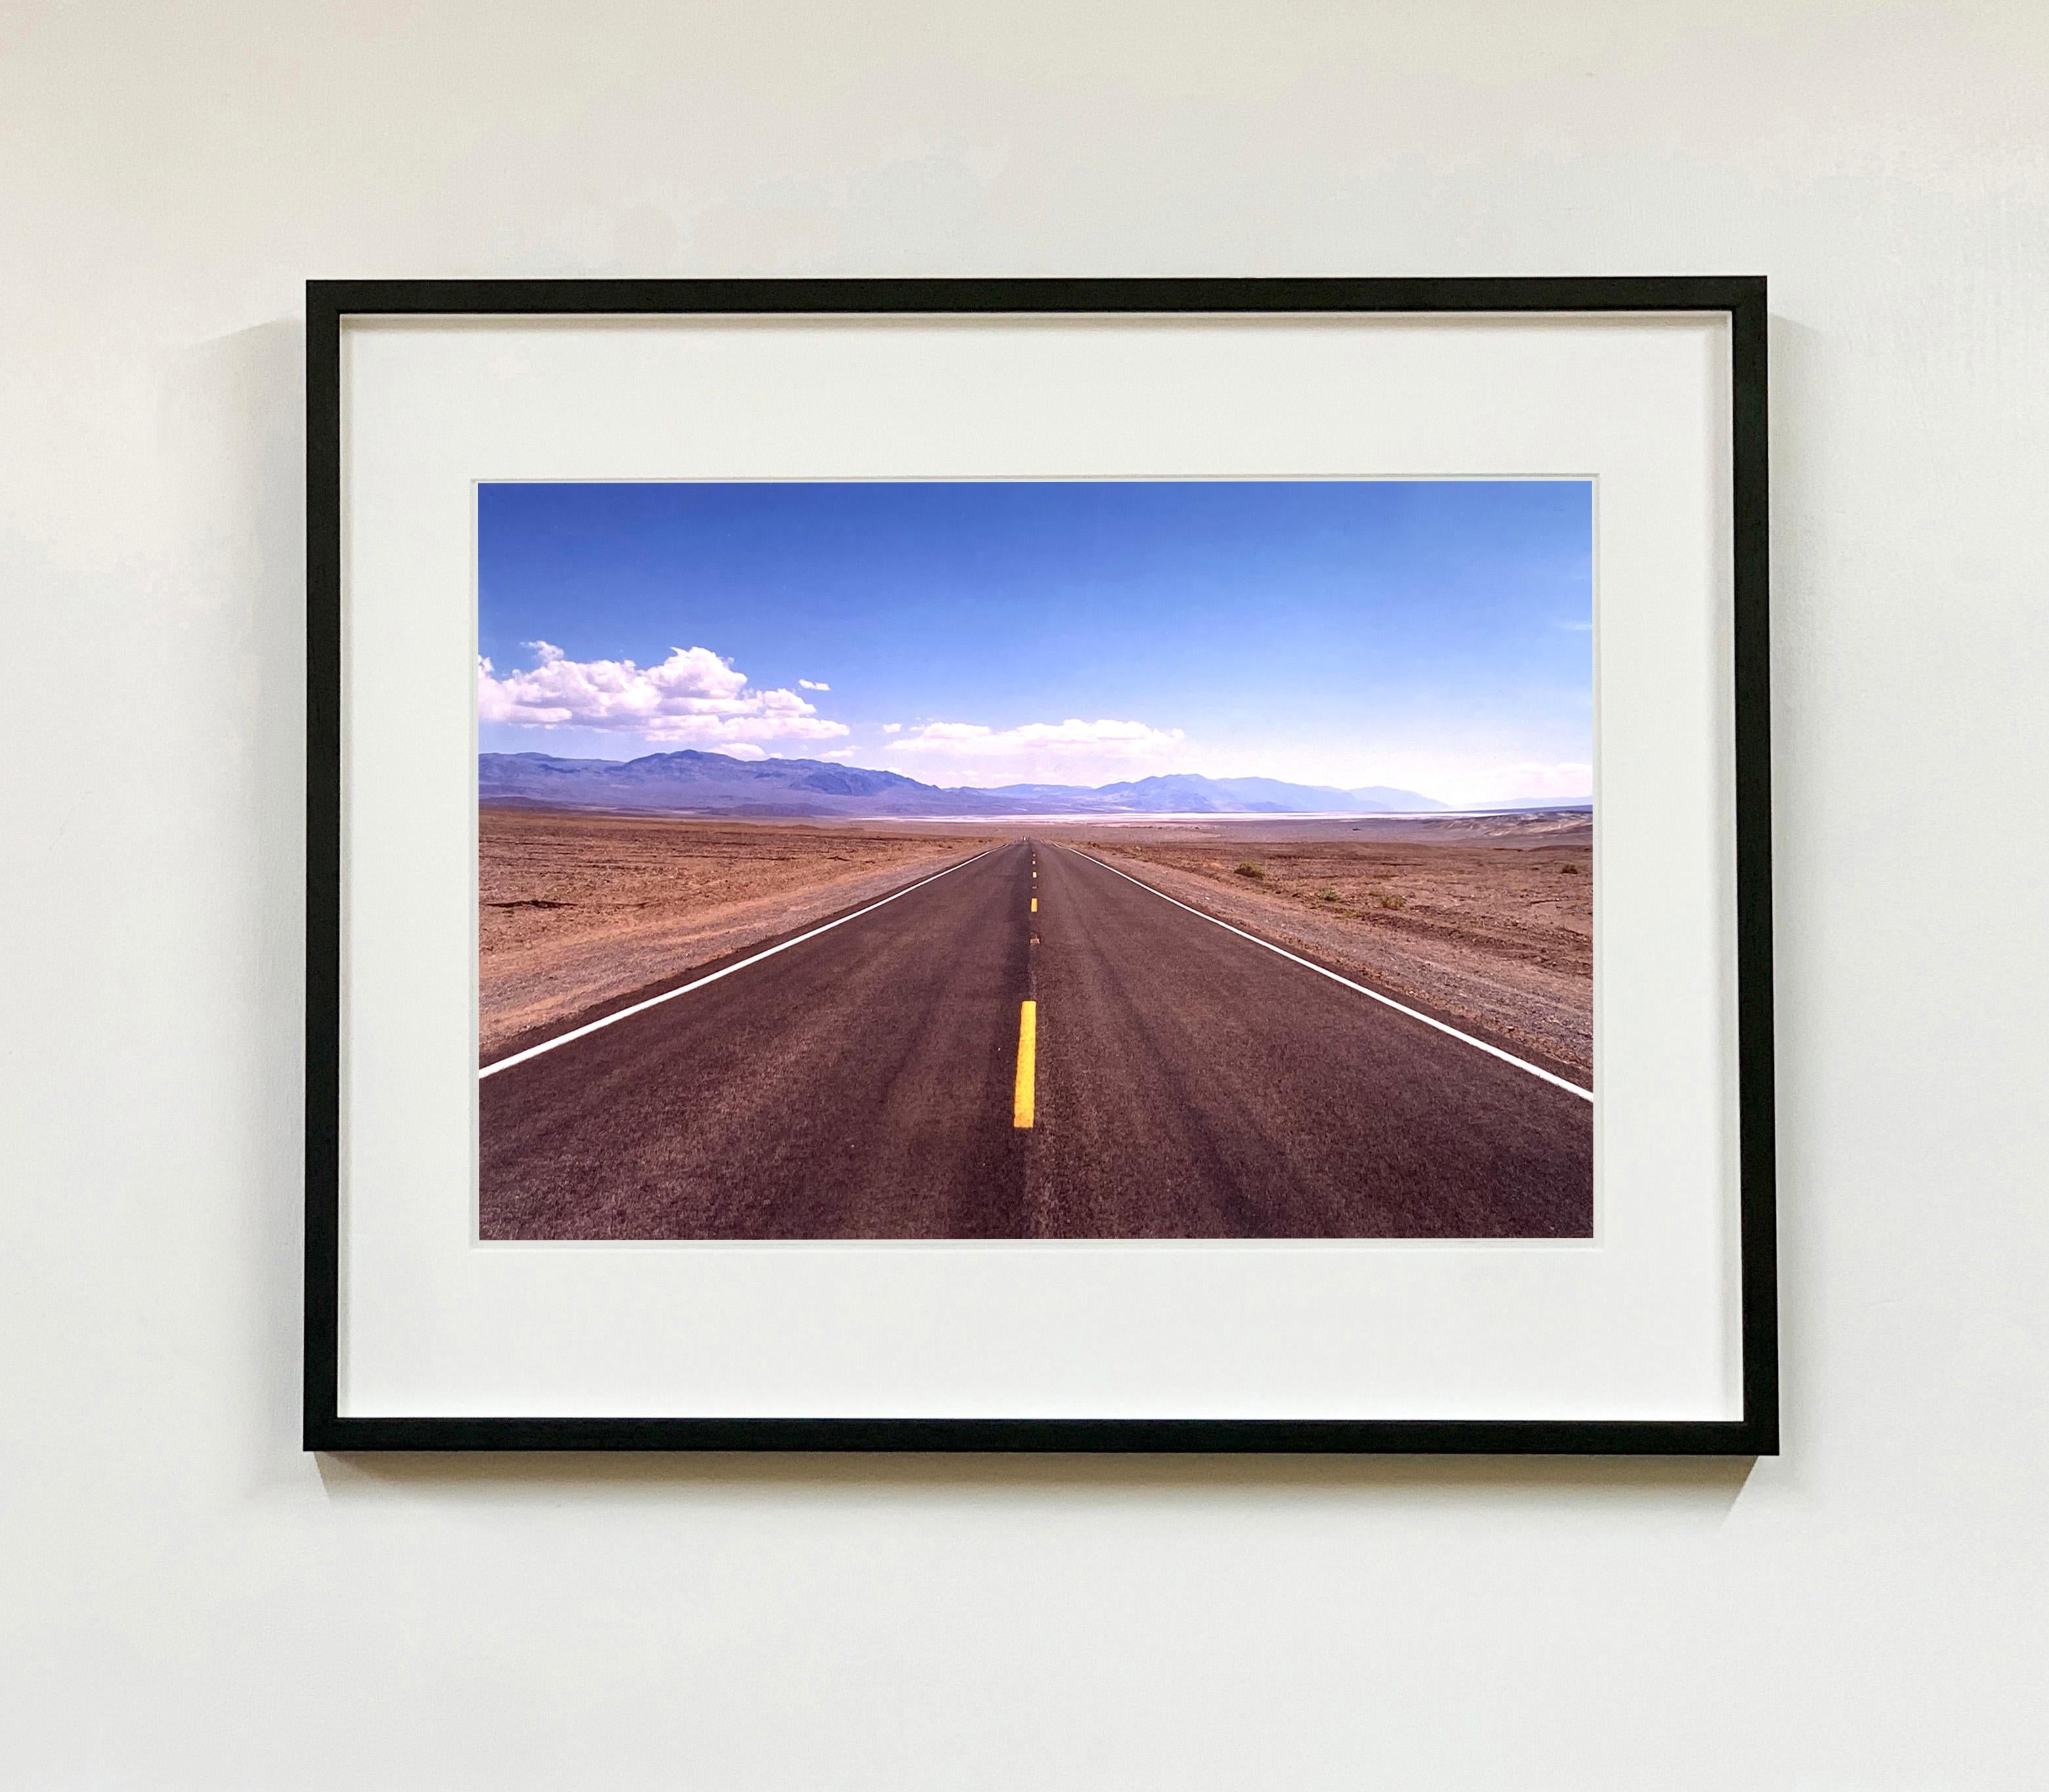 La vallée de la mort, désert du Mojave, Californie - Photo couleur de paysage - Photograph de Richard Heeps